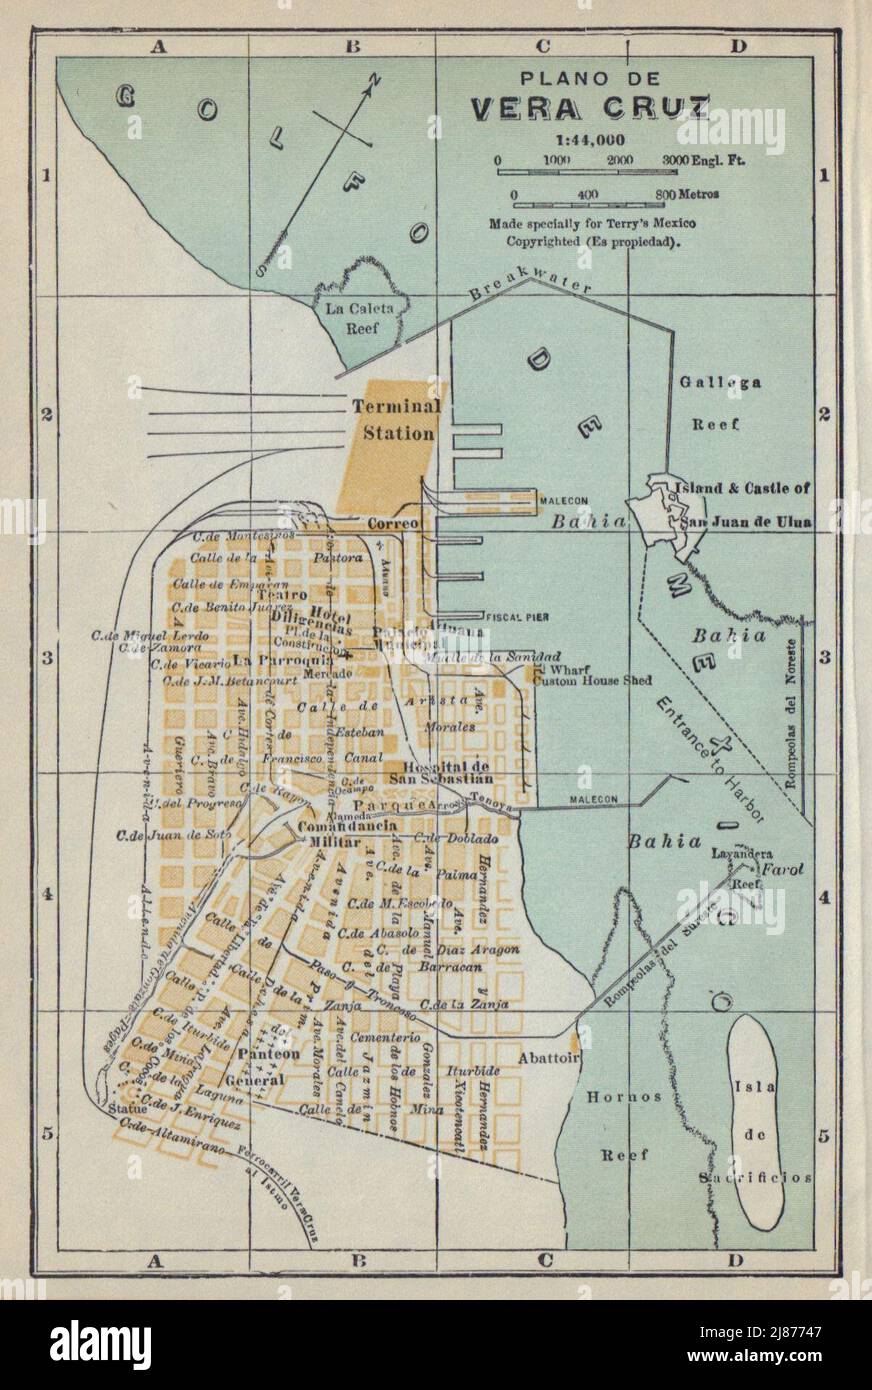 Plano de VERACRUZ, Mexico. Mapa de la ciudad. City/town plan 1938 old Stock Photo